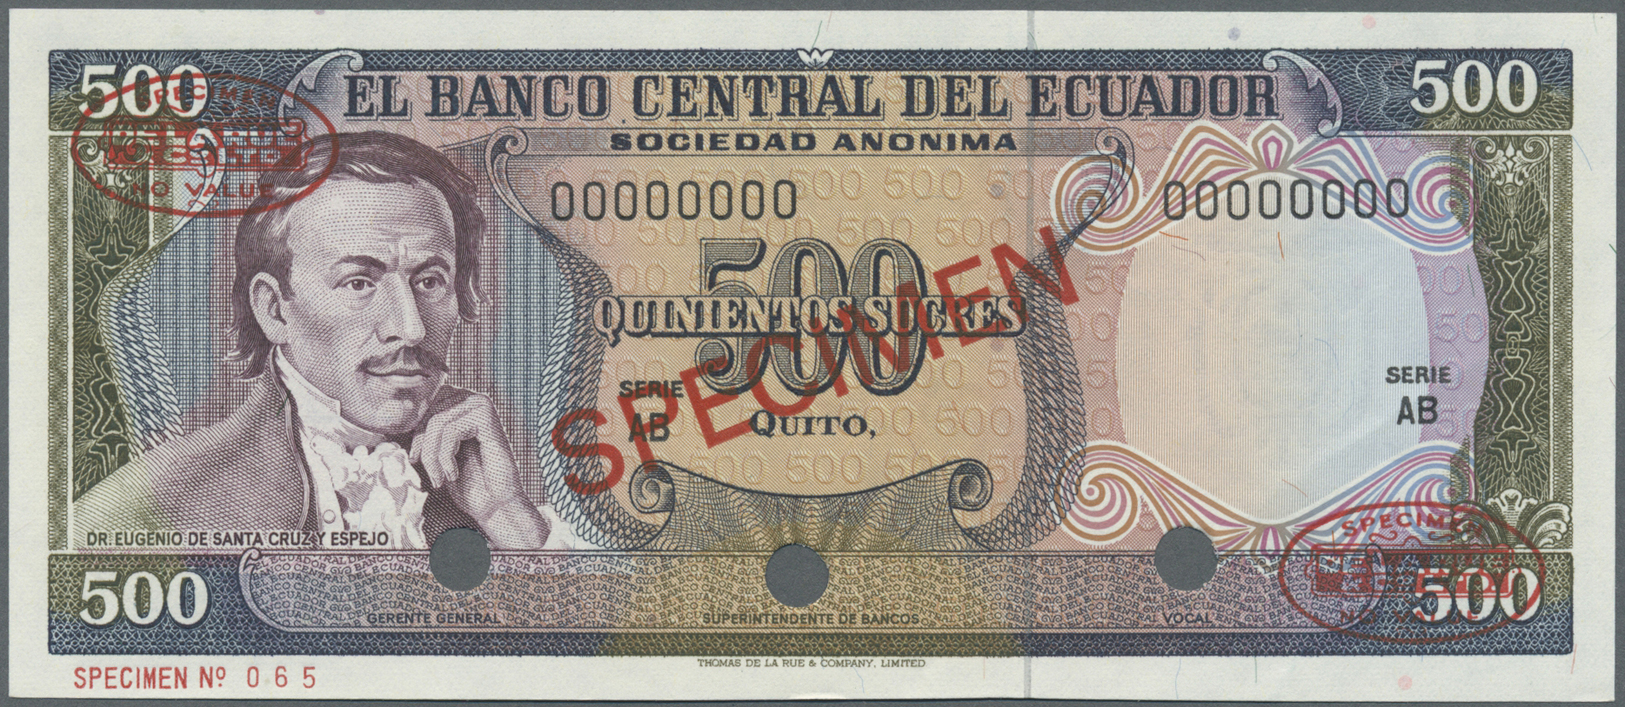 00679 Ecuador: 500 Sucres ND Specimen P. 119s In Condition: UNC. - Ecuador